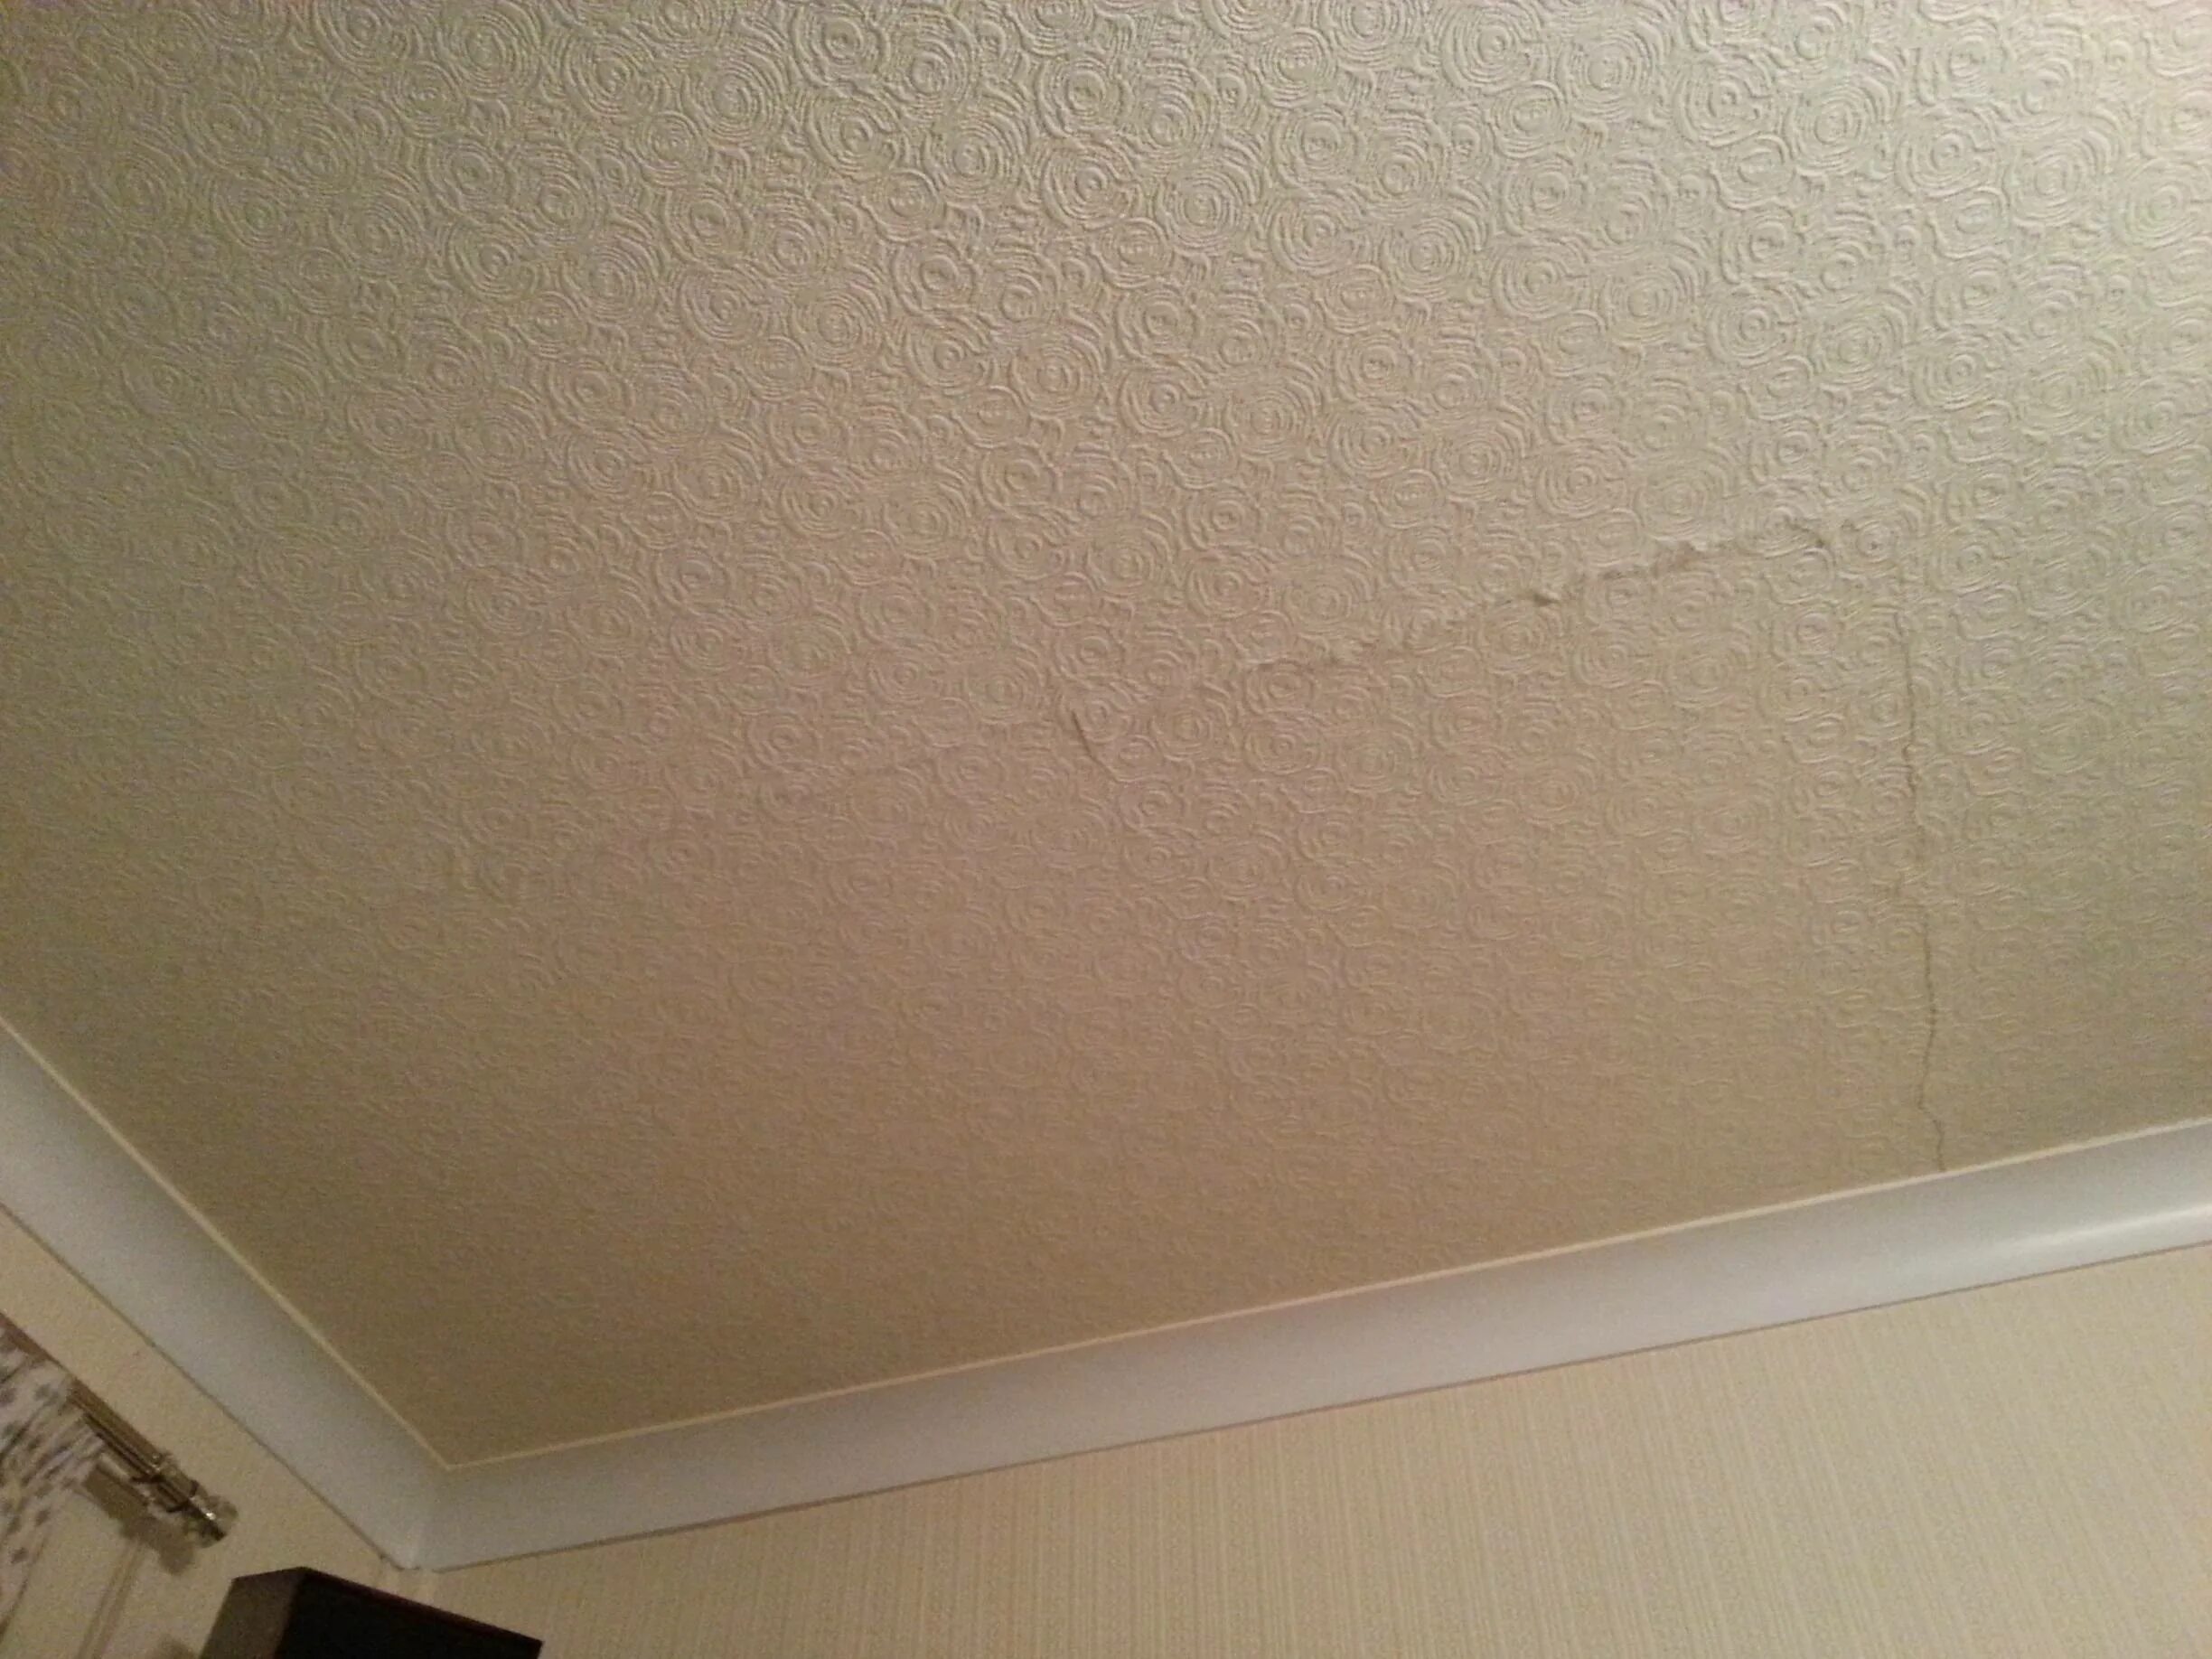 Трещины на потолке. Микротрещины на гипсокартонном потолке. Трещины в гипсокартоновом потолке. Потрескавшийся потолок. Щель в потолке.